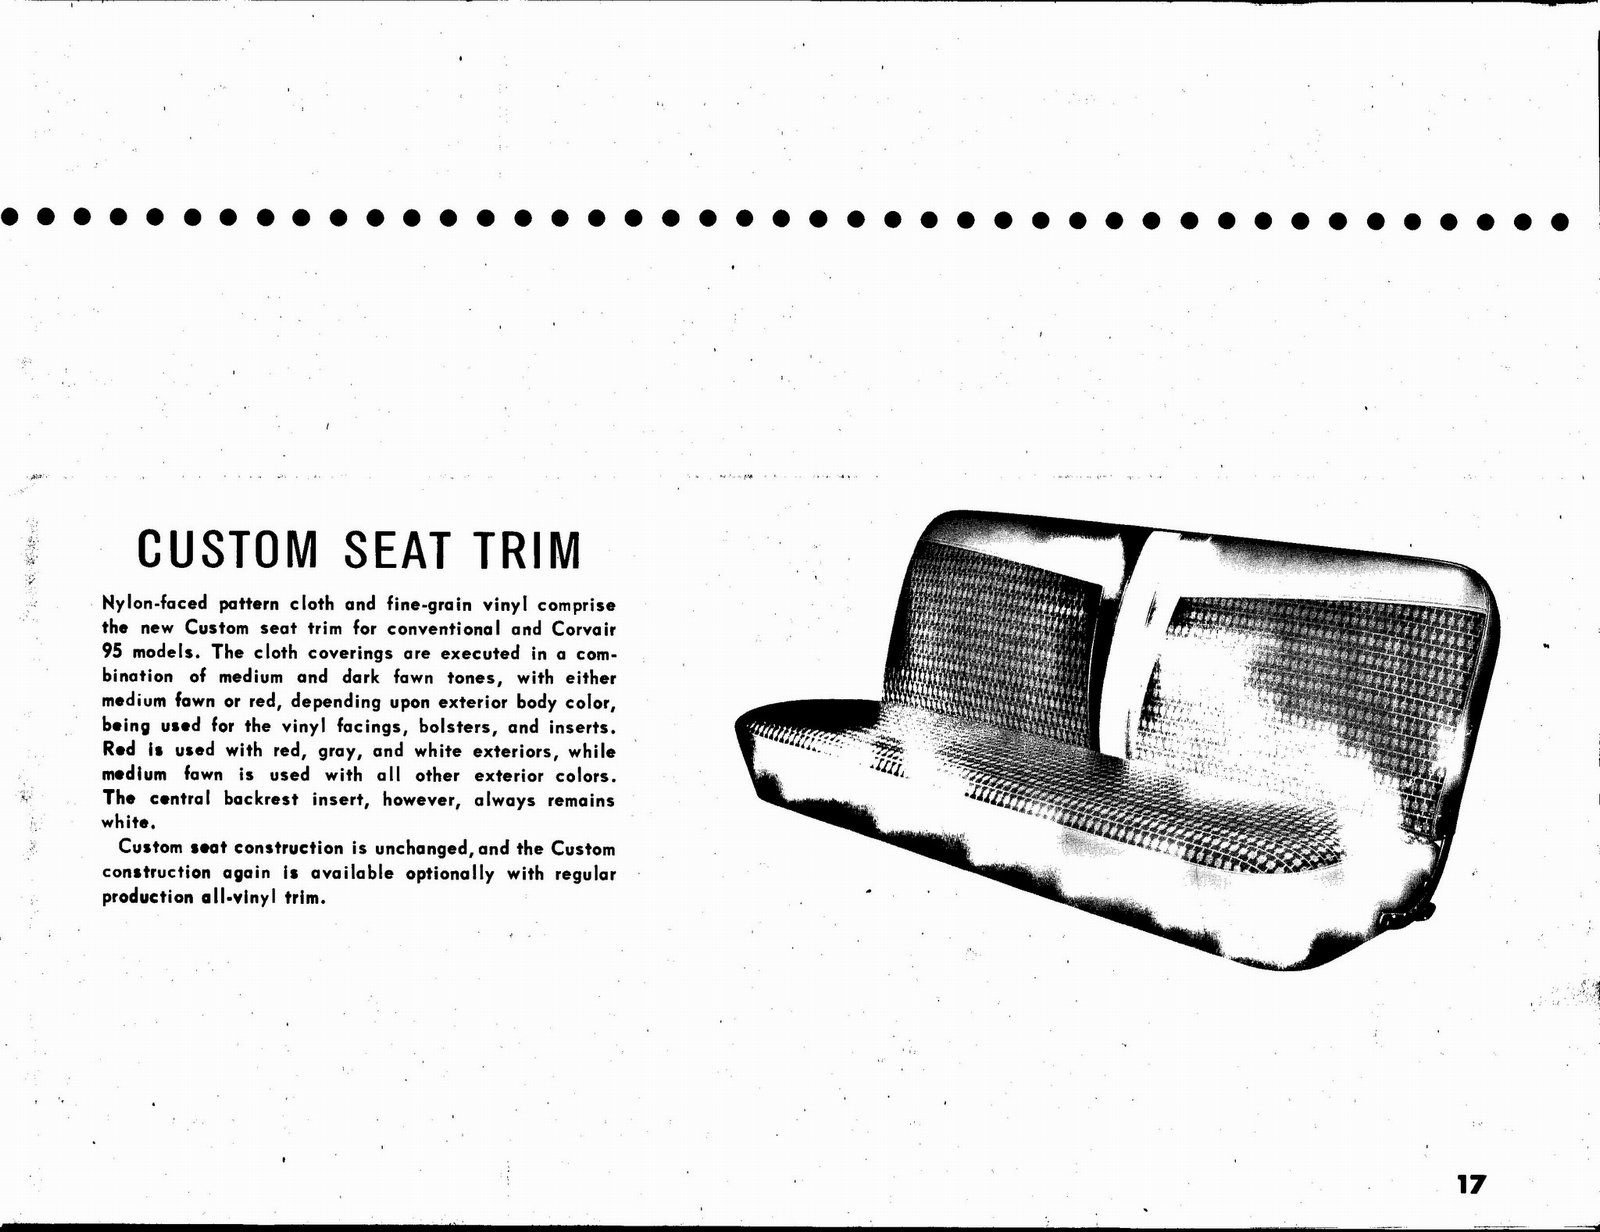 n_1963 Chevrolet Truck Engineering Features-17.jpg